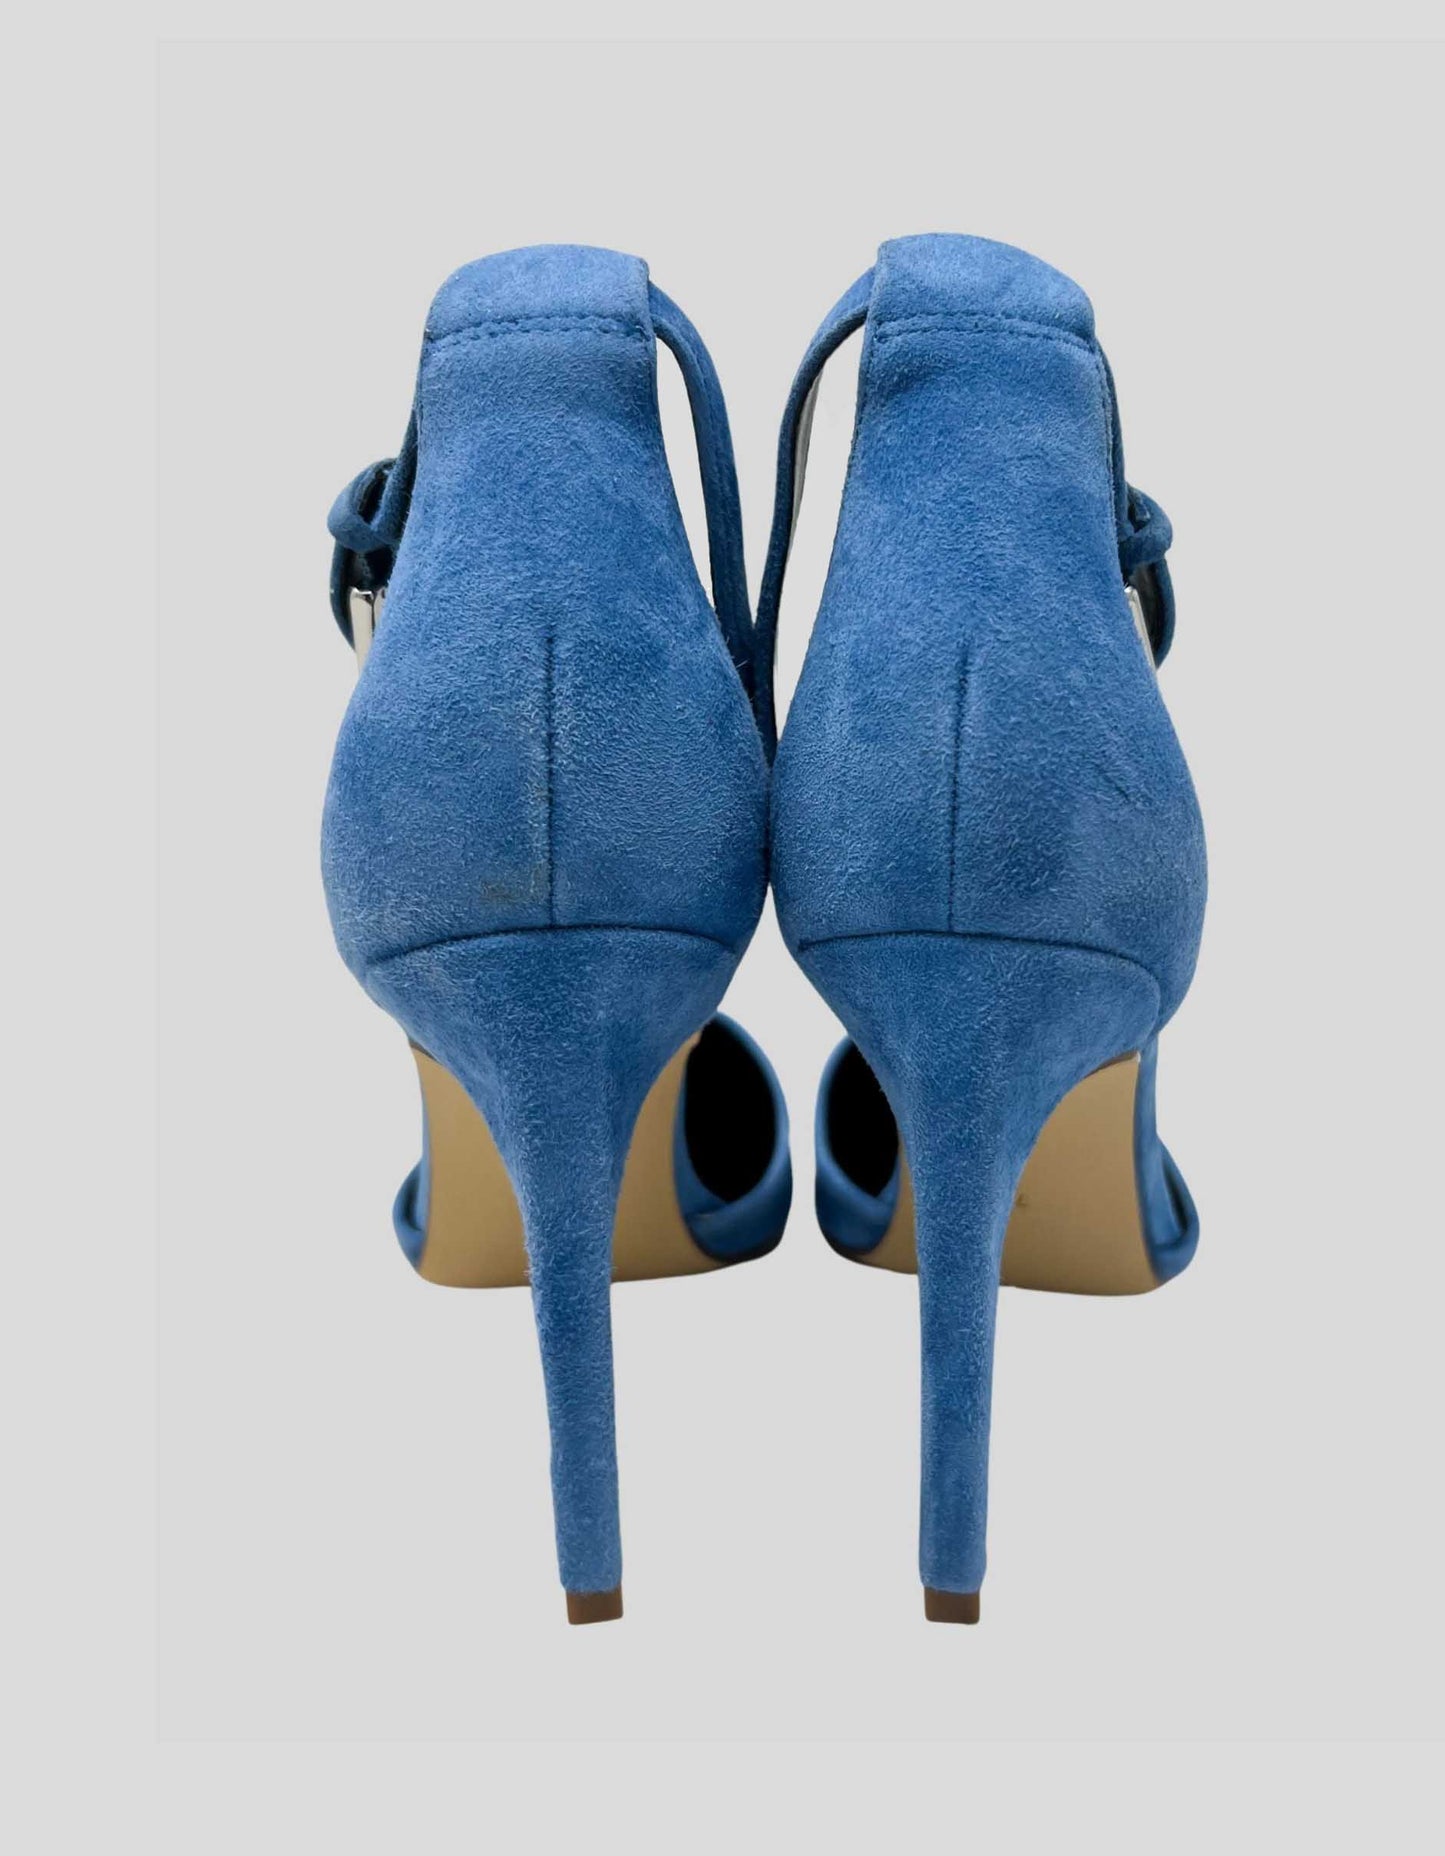 CALVIN KLEIN Baby Blue Suede Ankle Strap Heels - 7M US